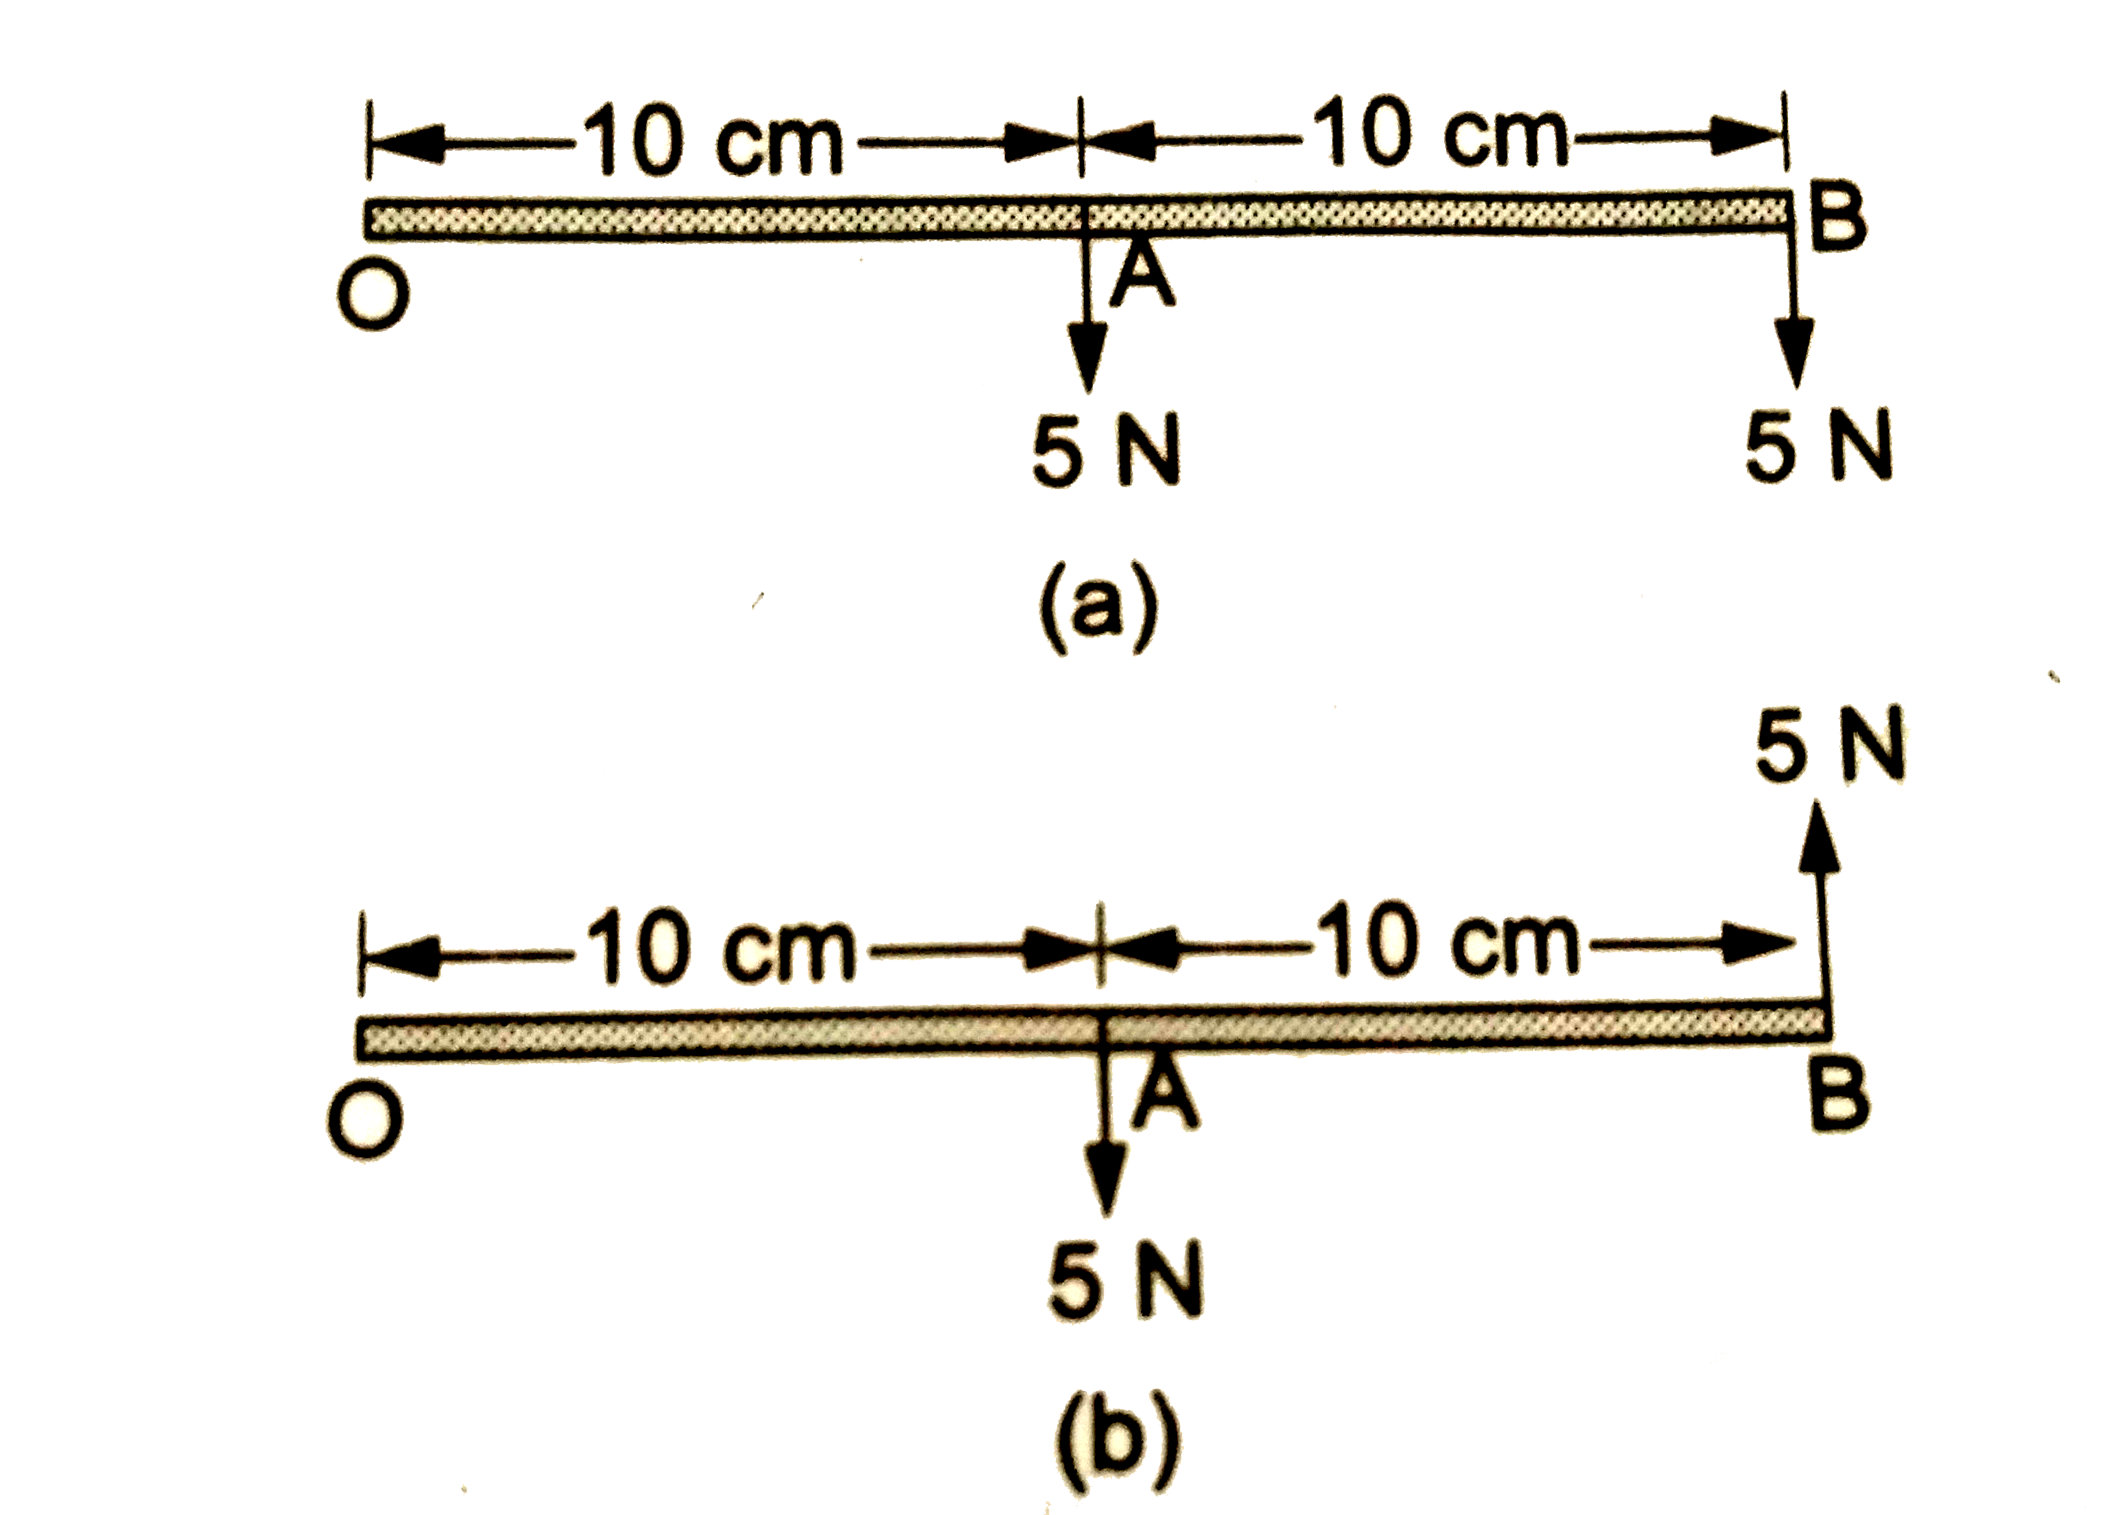 एक छड़ OAB चित्र में दिखाए गए तल में बिंदु O के परितः घूम सकती है इसपर लगते बल भी  चित्र में दिखाए गए है दोनों स्थितियों में घूर्णन अक्ष के प्रति चढ़ पर लगते कुल बल-आघूर्ण की गणना करें